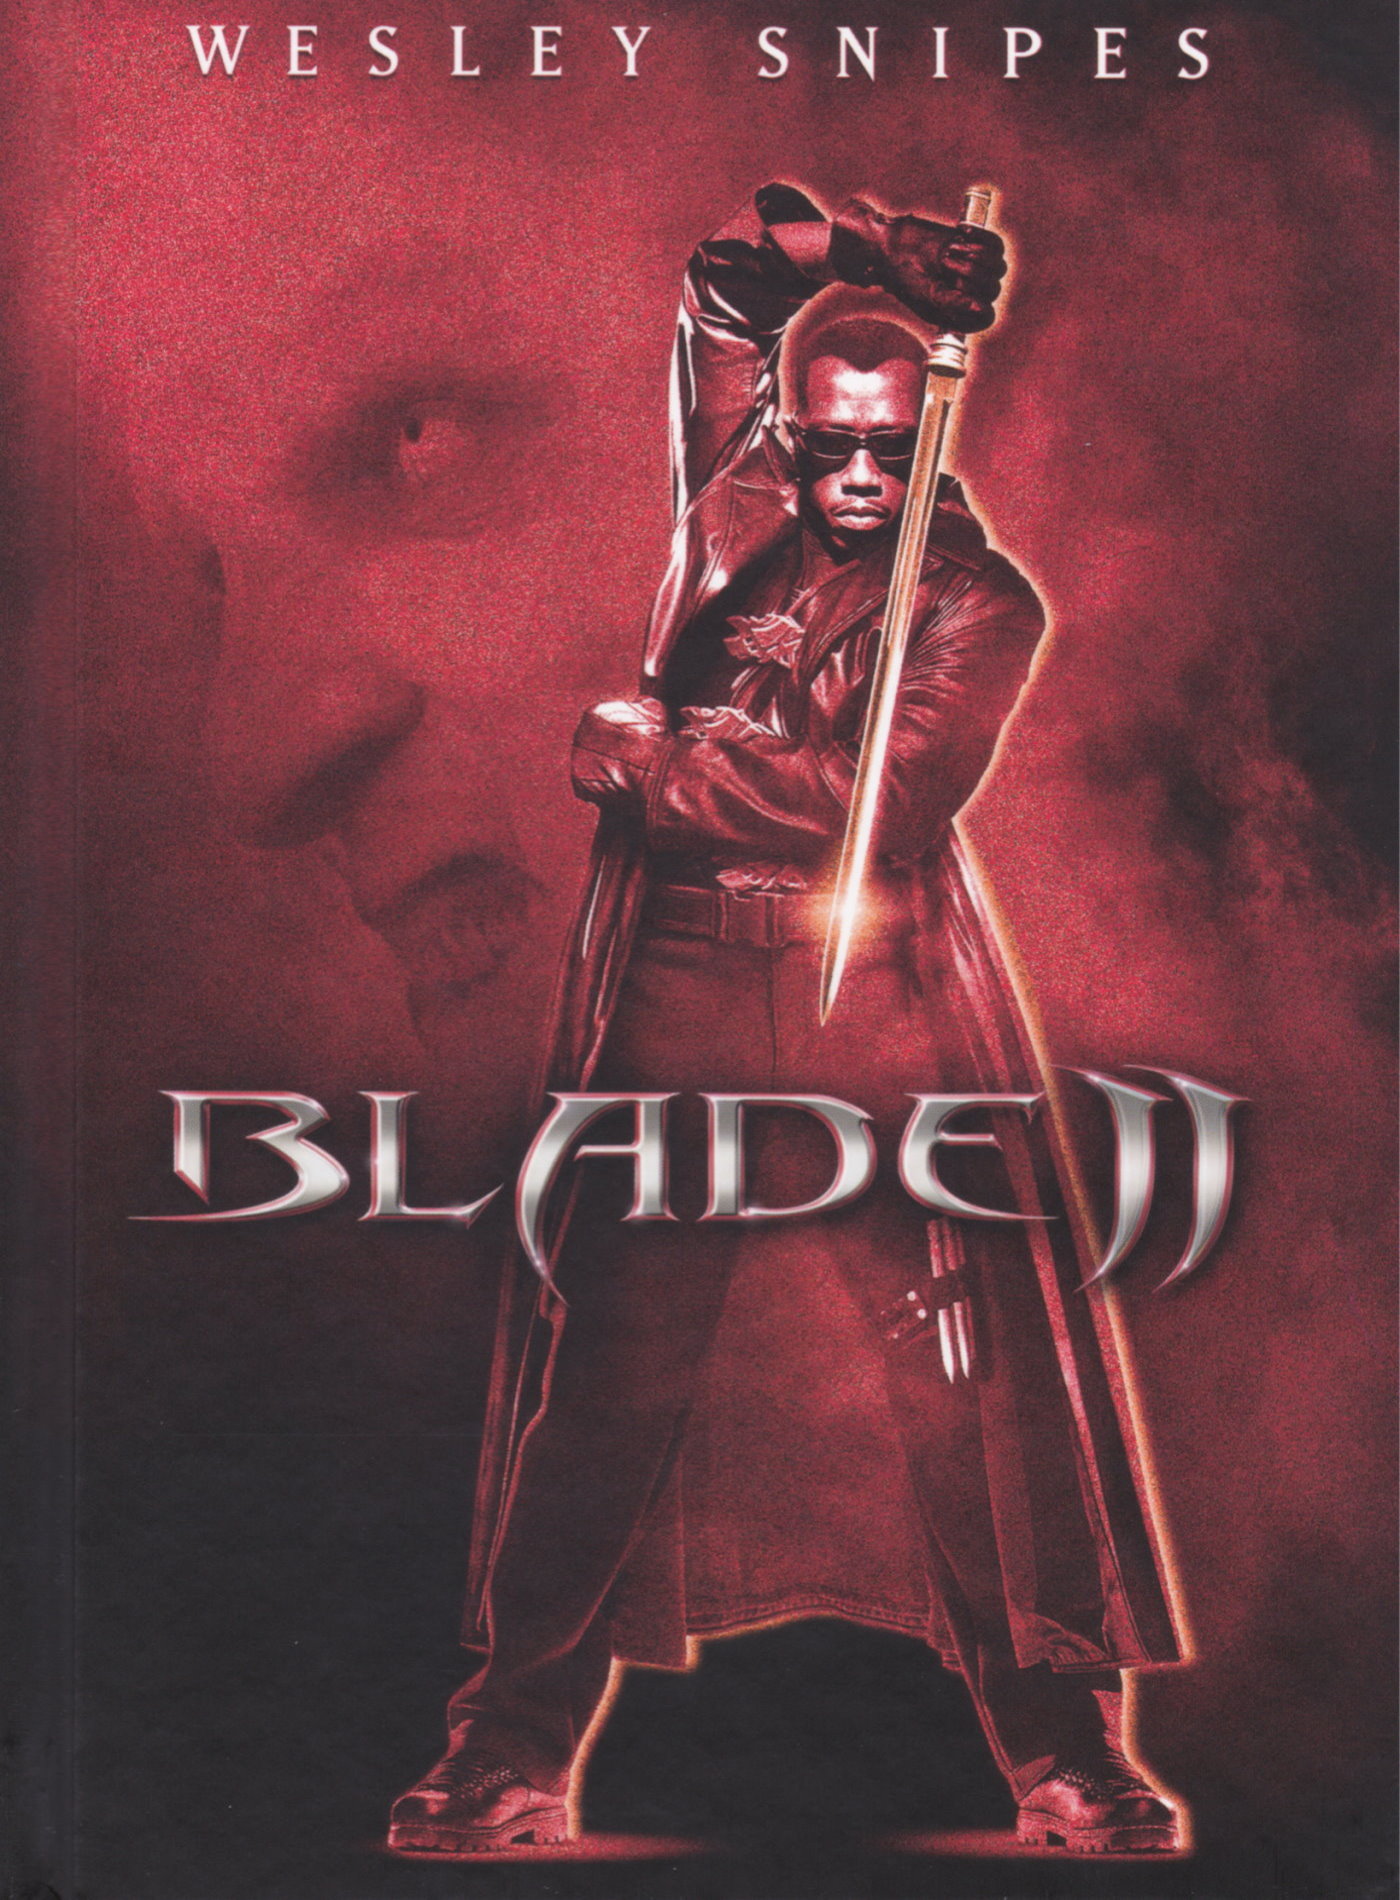 Cover - Blade II.jpg